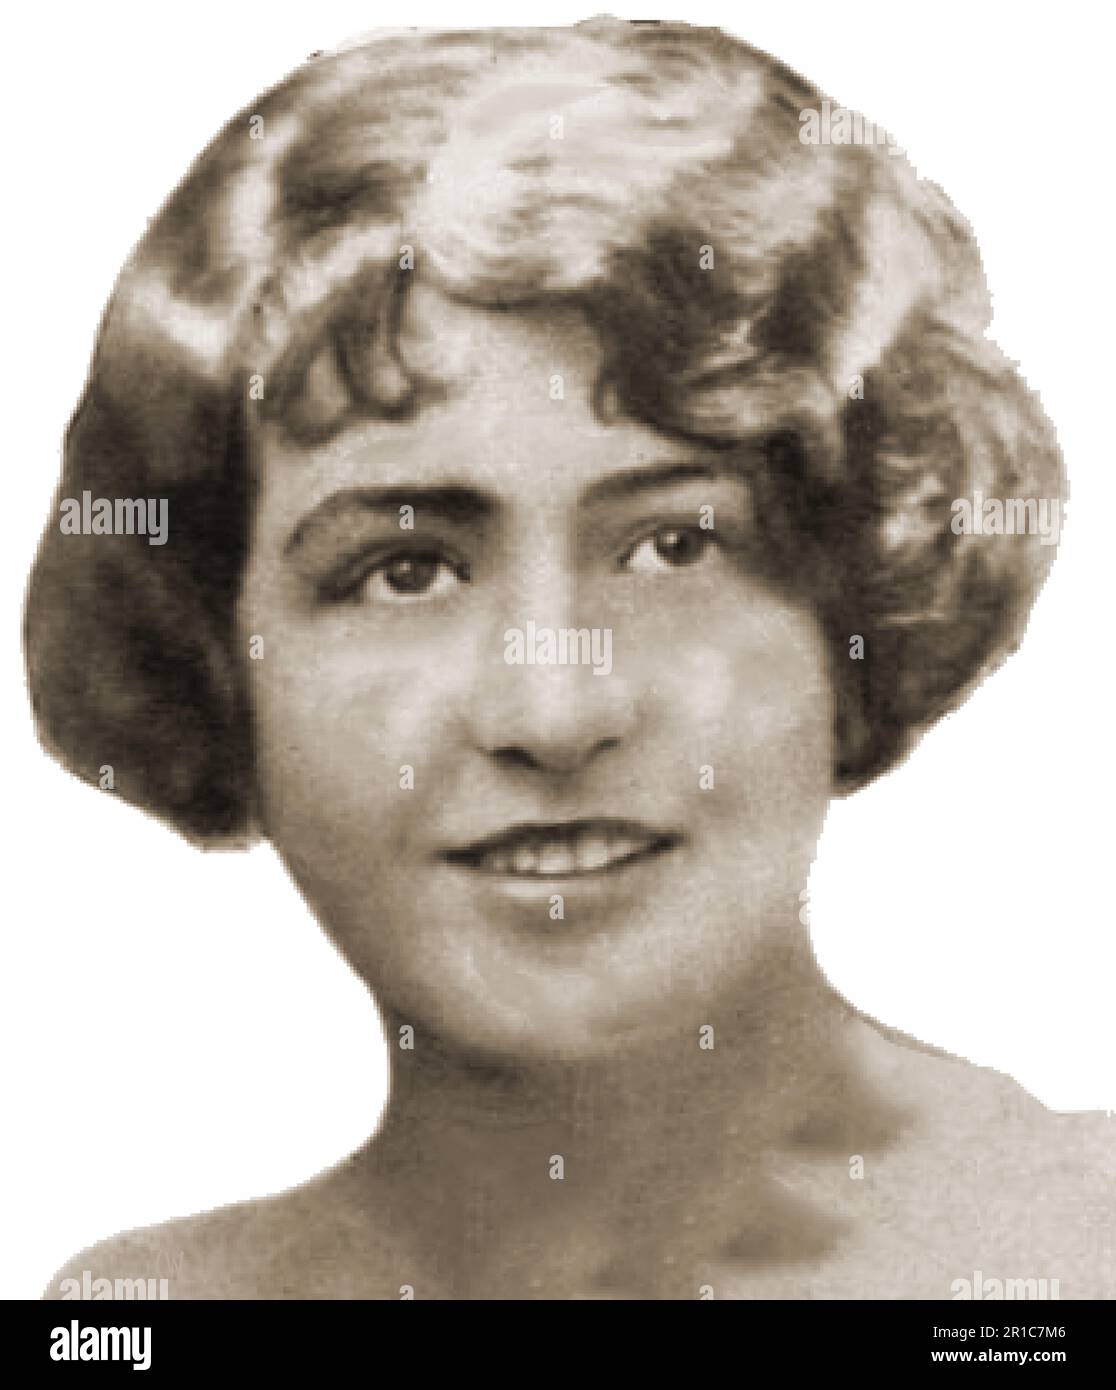 Ein Porträt der vermissten Witwe Mrs. Rogers (Barringer Manor Mystery). Witwe Ella Mae McDowell (Rogers), geboren 1896, vermisst seit 1928. Sie verschwand aus ihrer Wohnung in Baringer Manor, Louisville, Kentucky, im Alter von 29 Jahren, direkt nach einer Reise. Ihre Taschen waren gepackt. Das Rätsel wurde nie gelöst. Stockfoto